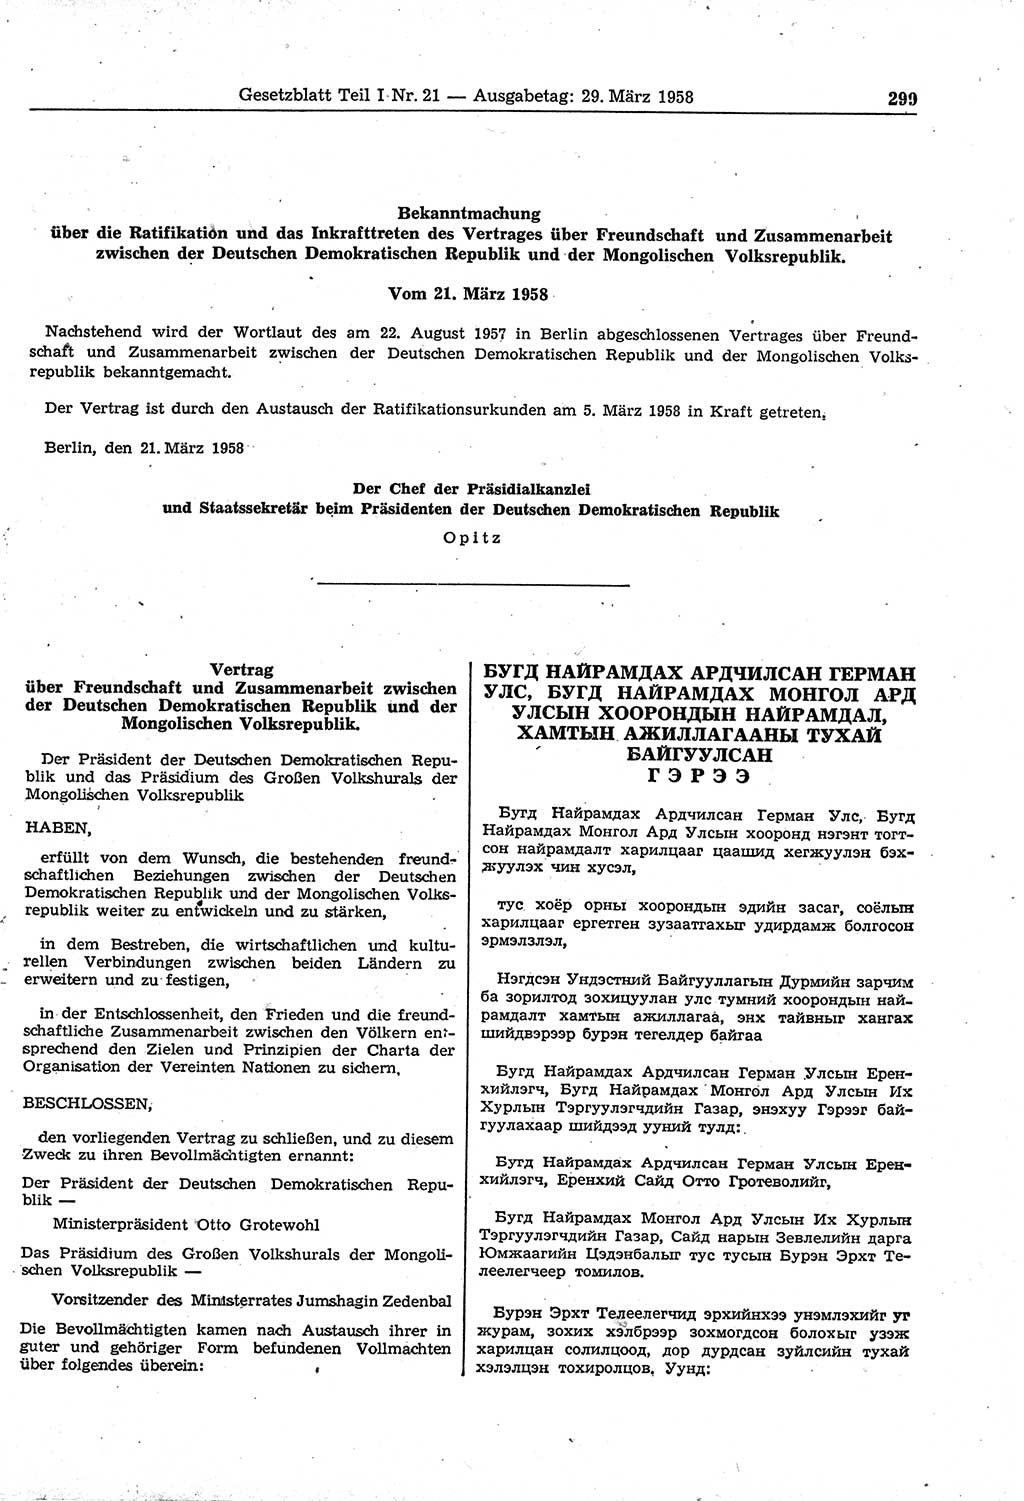 Gesetzblatt (GBl.) der Deutschen Demokratischen Republik (DDR) Teil Ⅰ 1958, Seite 299 (GBl. DDR Ⅰ 1958, S. 299)